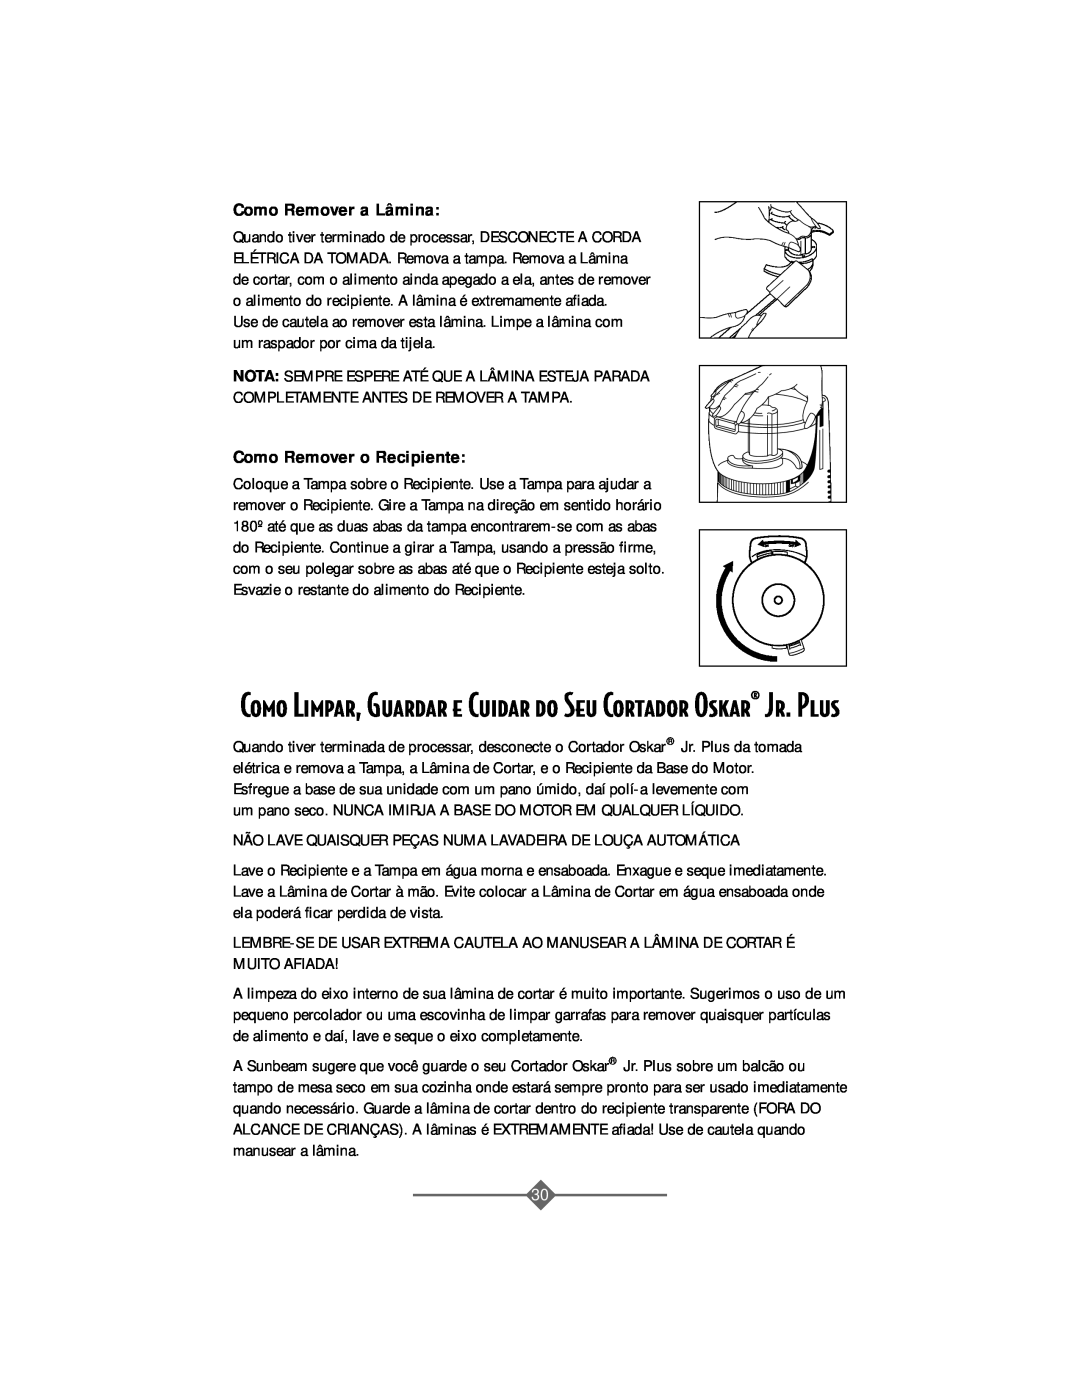 Sunbeam 4816-8 instruction manual Como Remover a Lâmina, Como Remover o Recipiente 